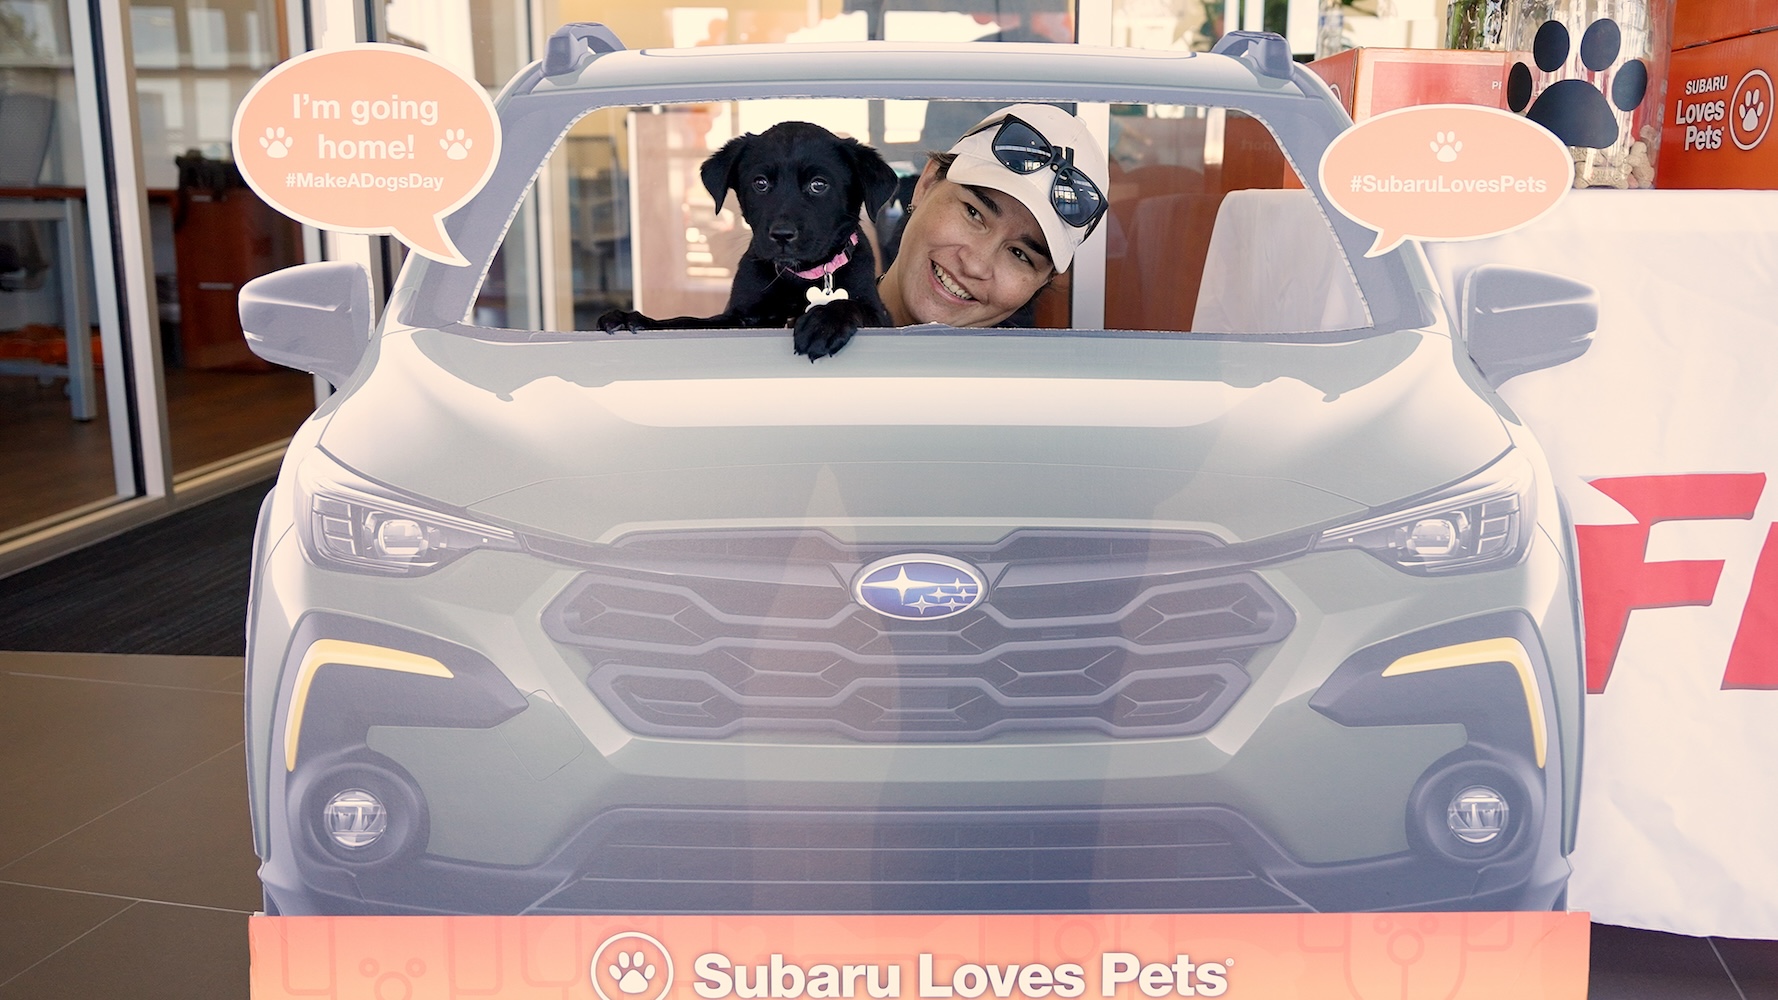 Subaru pet adoption event